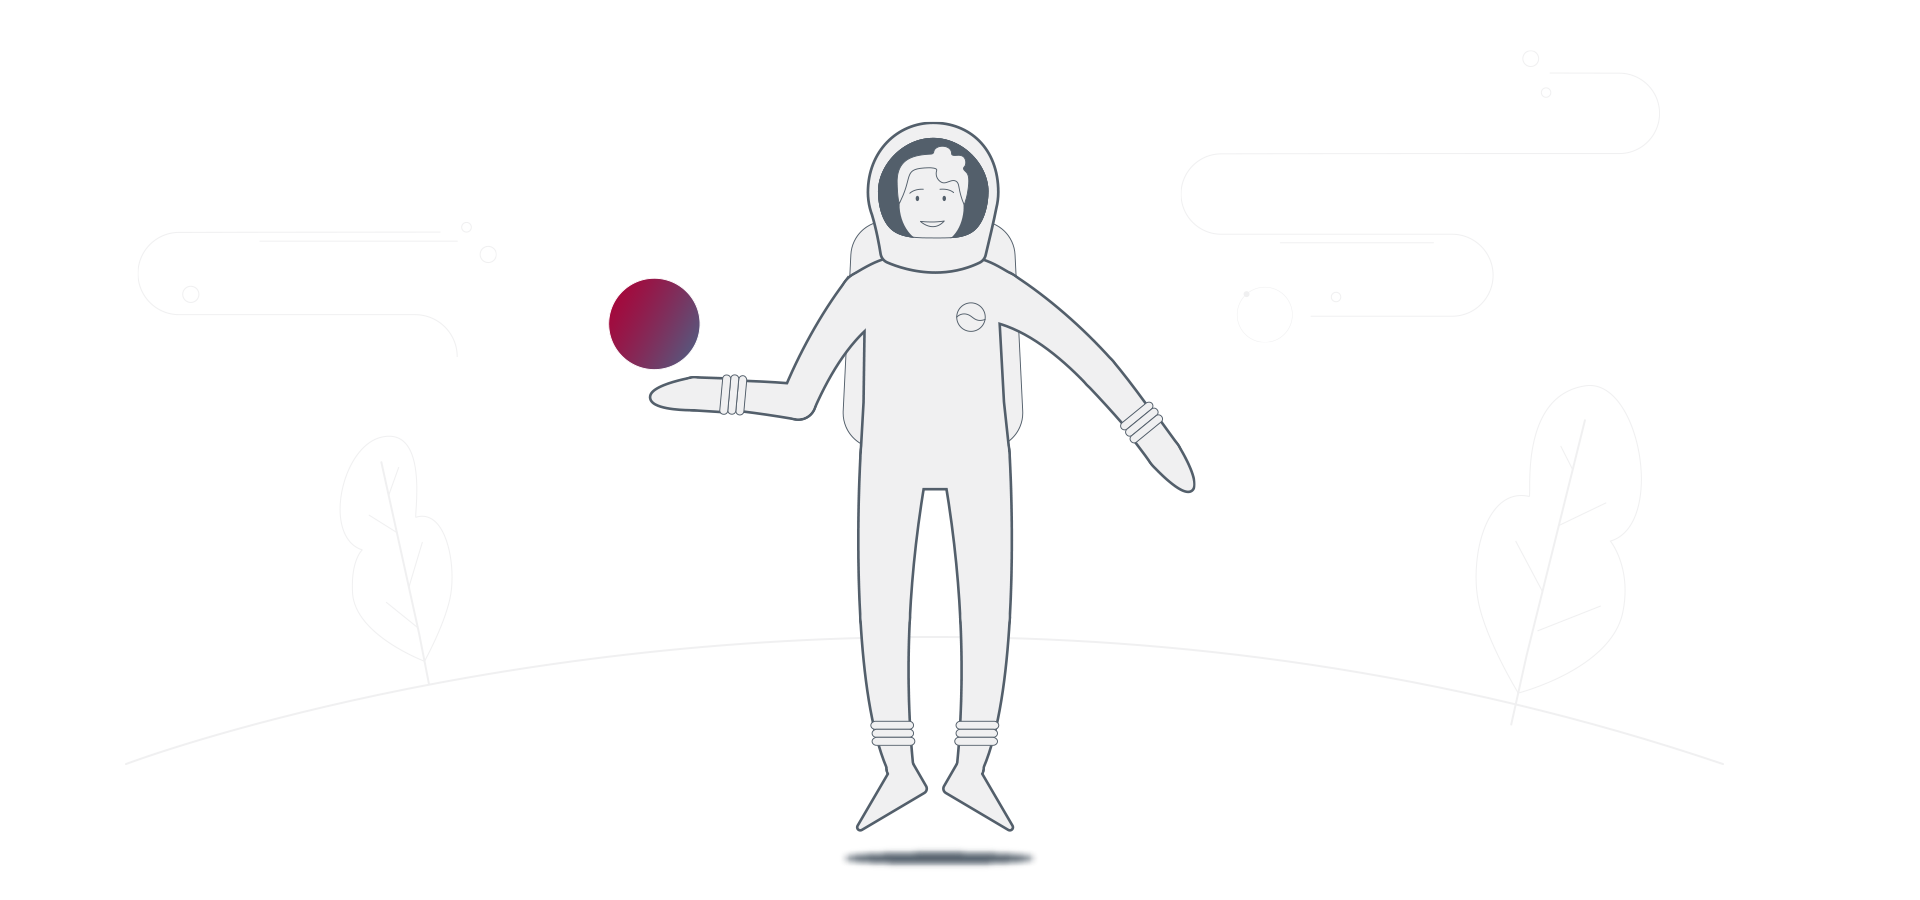 Grafik mit Line-Art-Elementen und Astronaut aus Outlast-Explainer